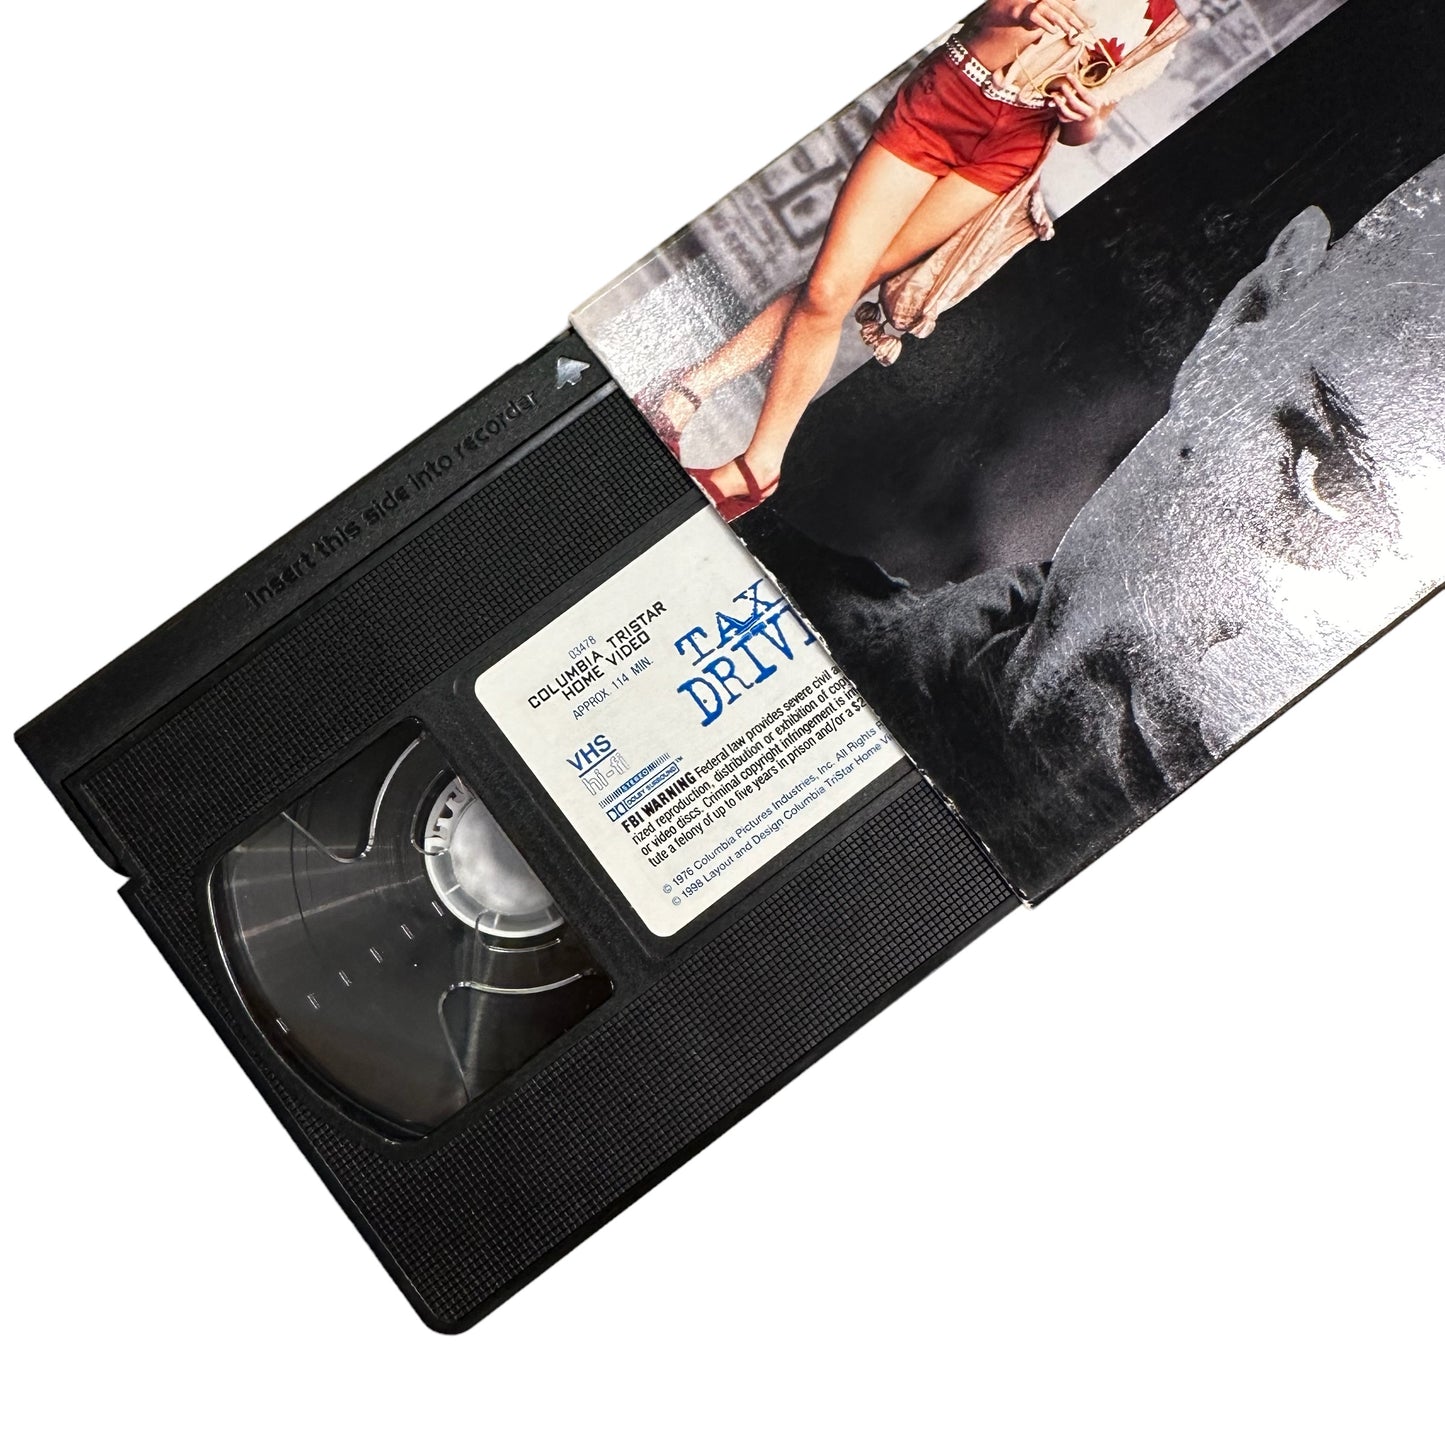 VHS ビデオテープ 輸入版 タクシードライバー Taxi Driver 海外版 USA アメリカ ヴィンテージ ビデオ 紙ジャケ